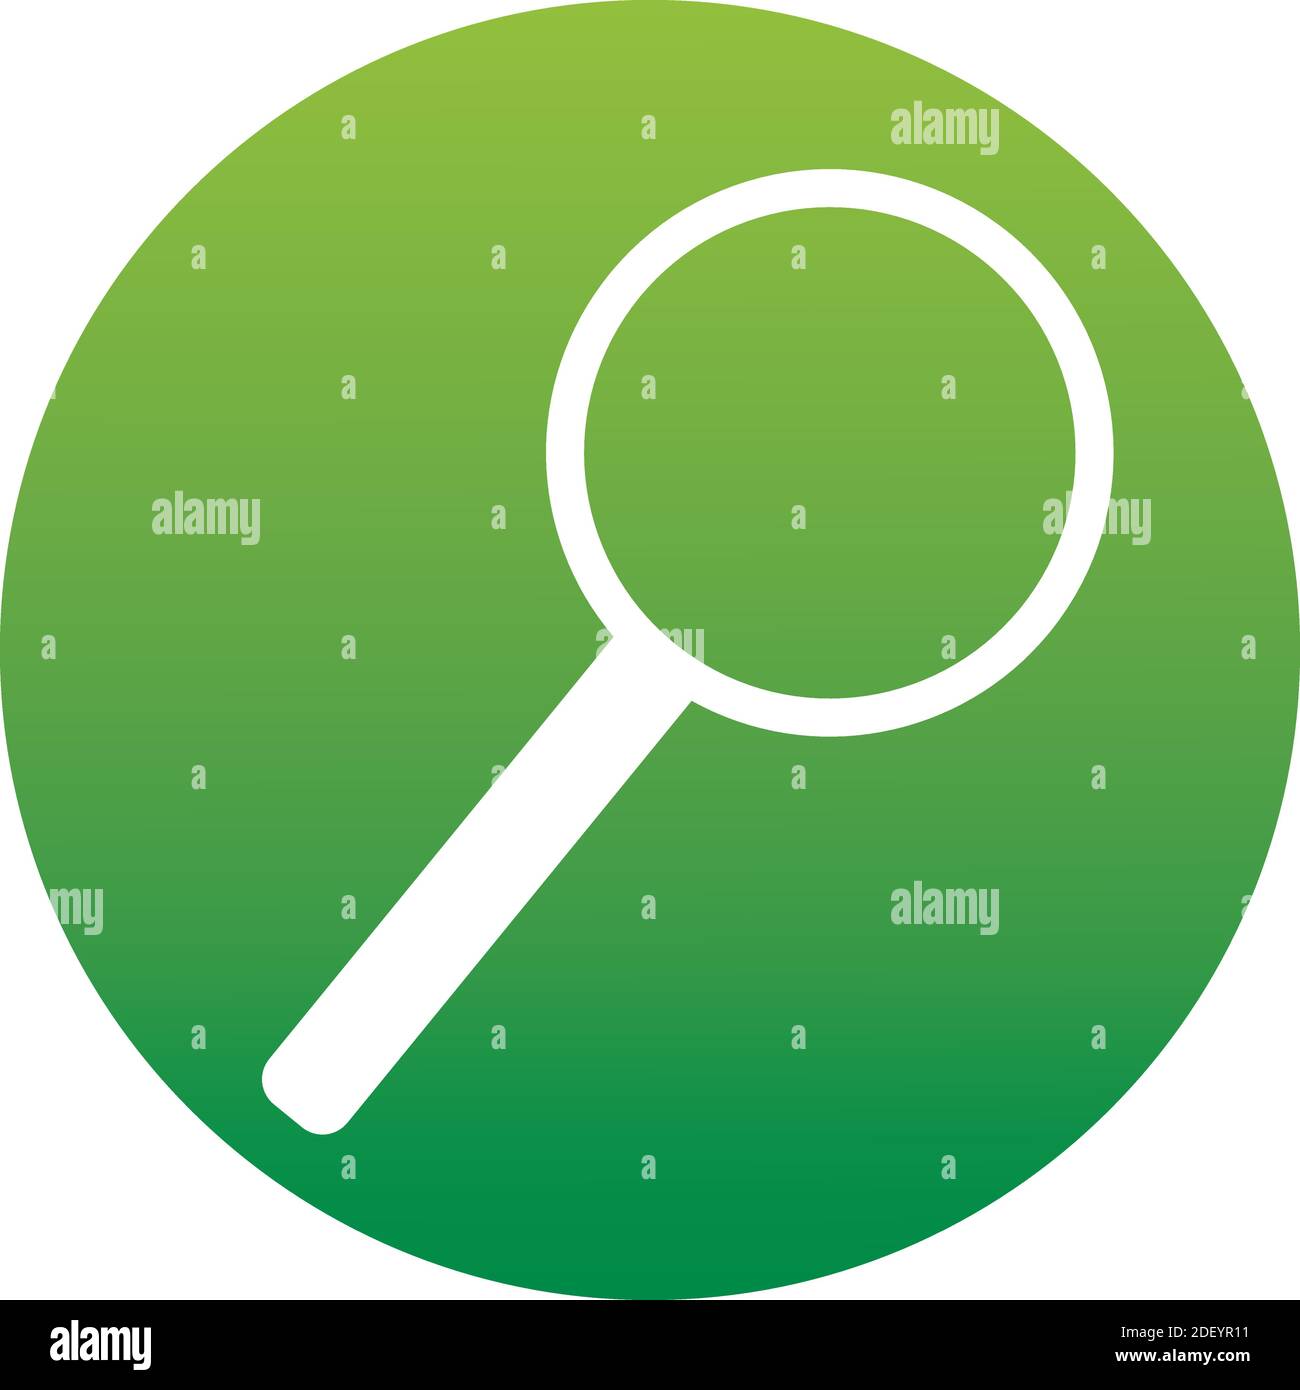 Suche Suchen Suchen Nach Informationen Forschung Vektor Konzept. Lupensymbol eines Satzes. Grüne Taste auf weißem Hintergrund isoliert. Stock Vektor